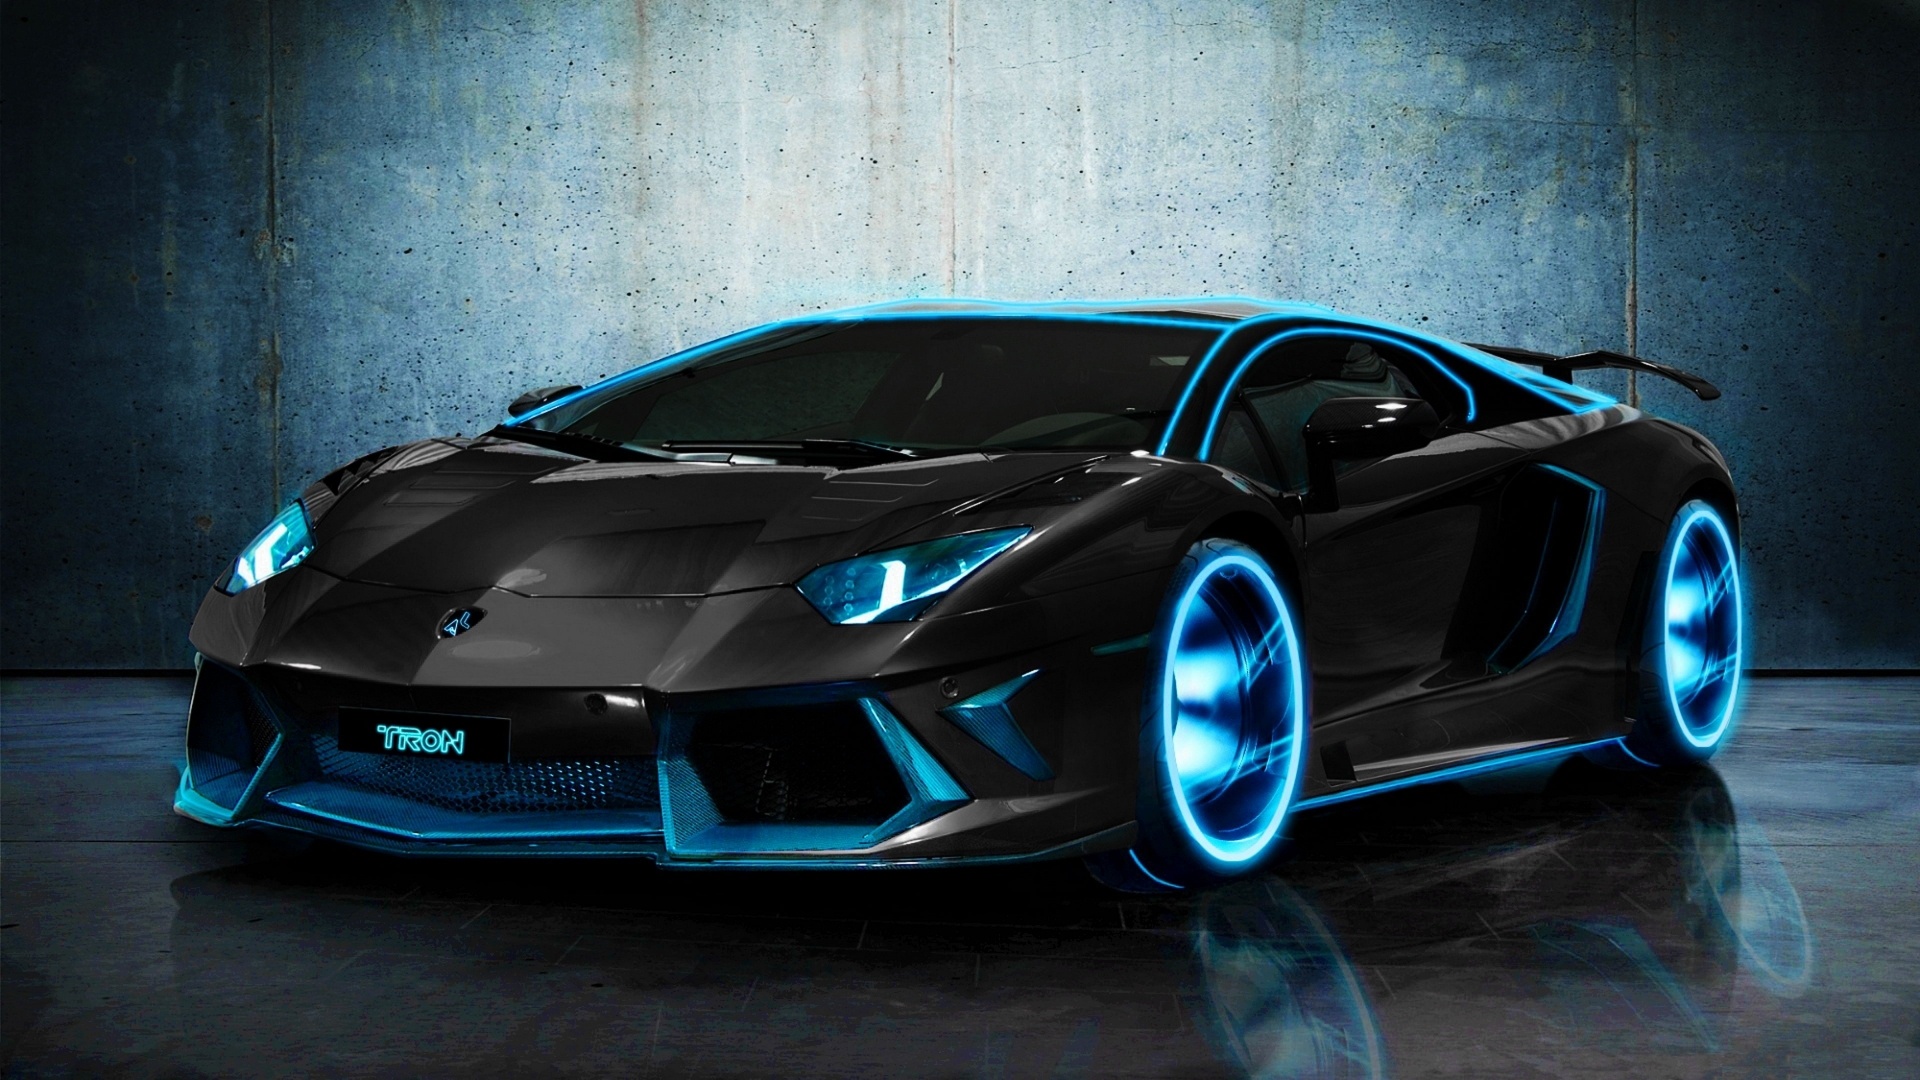 44+] Lamborghini HD Wallpapers 1080p - WallpaperSafari